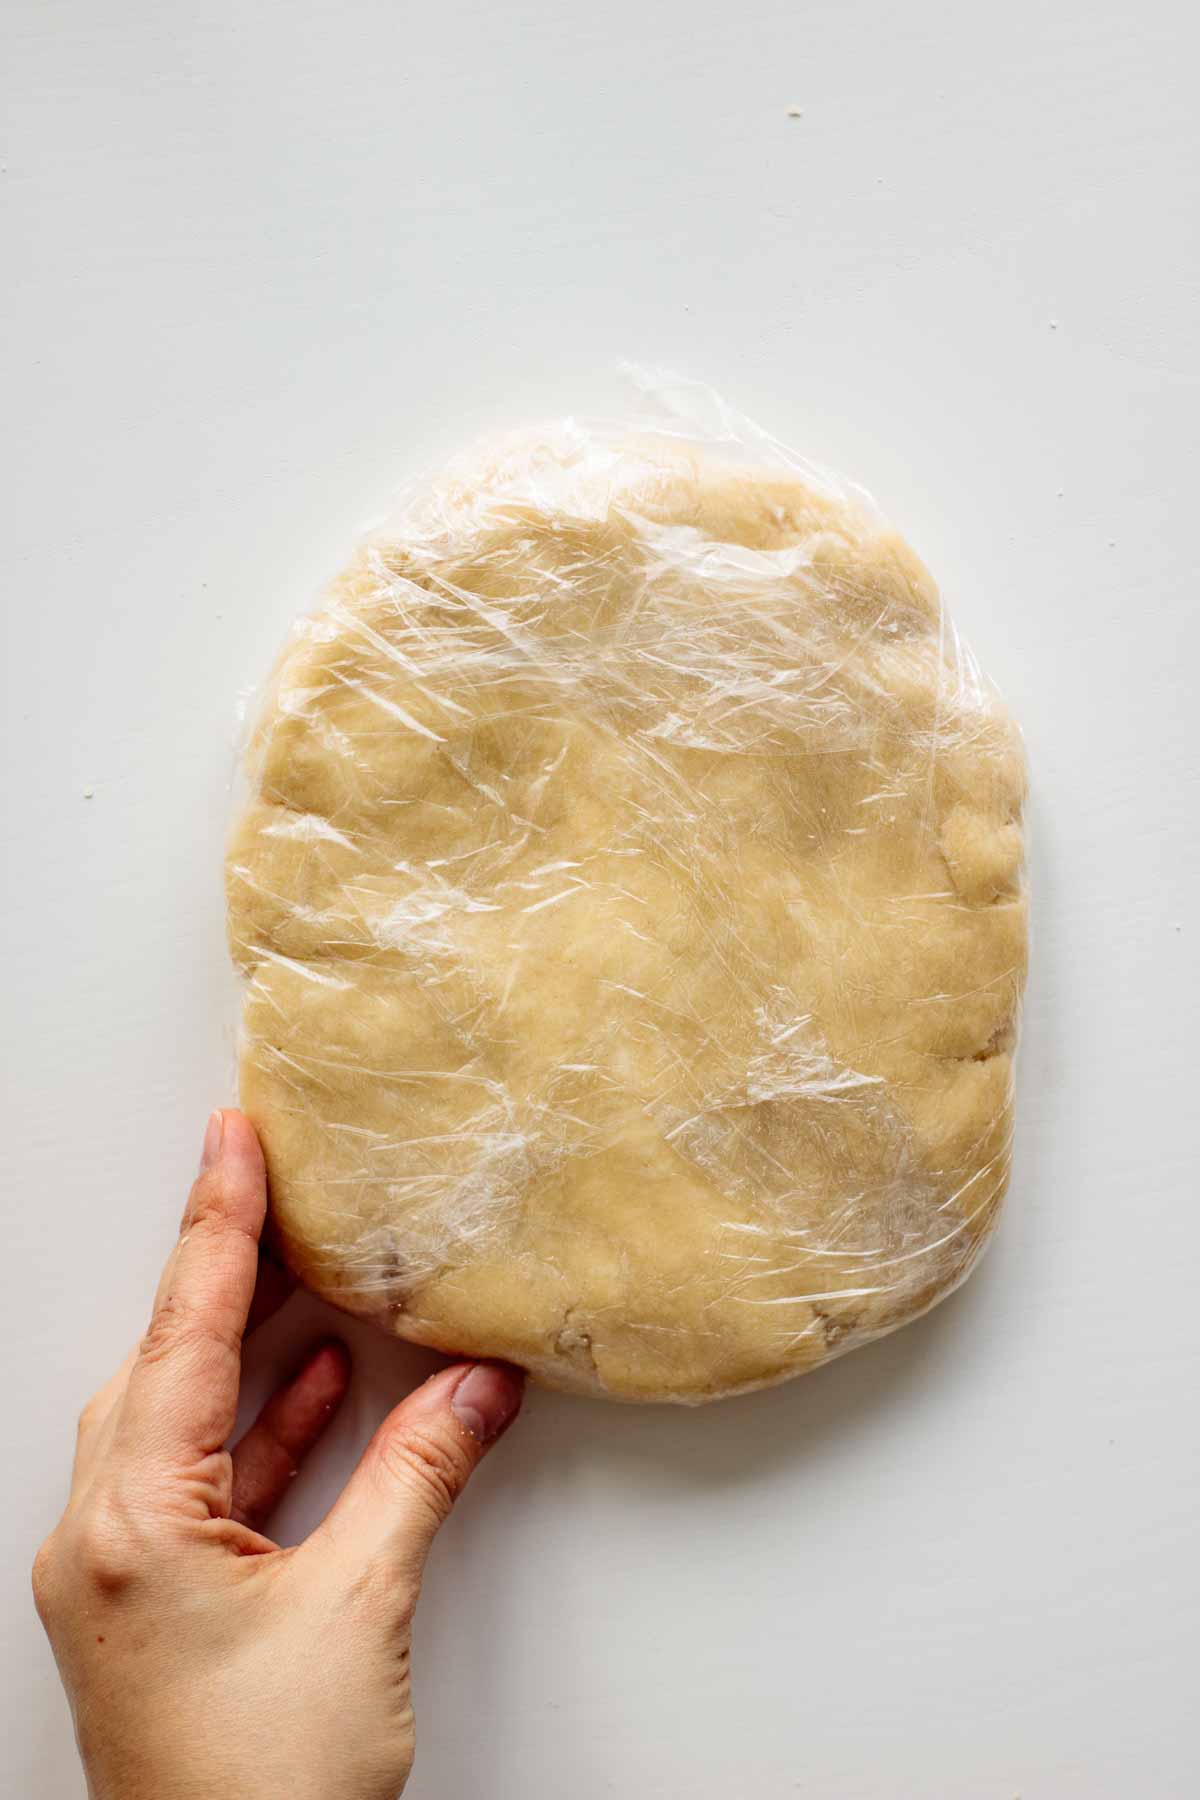 Sourdough discard pie crust dough covered in plastic wrap.